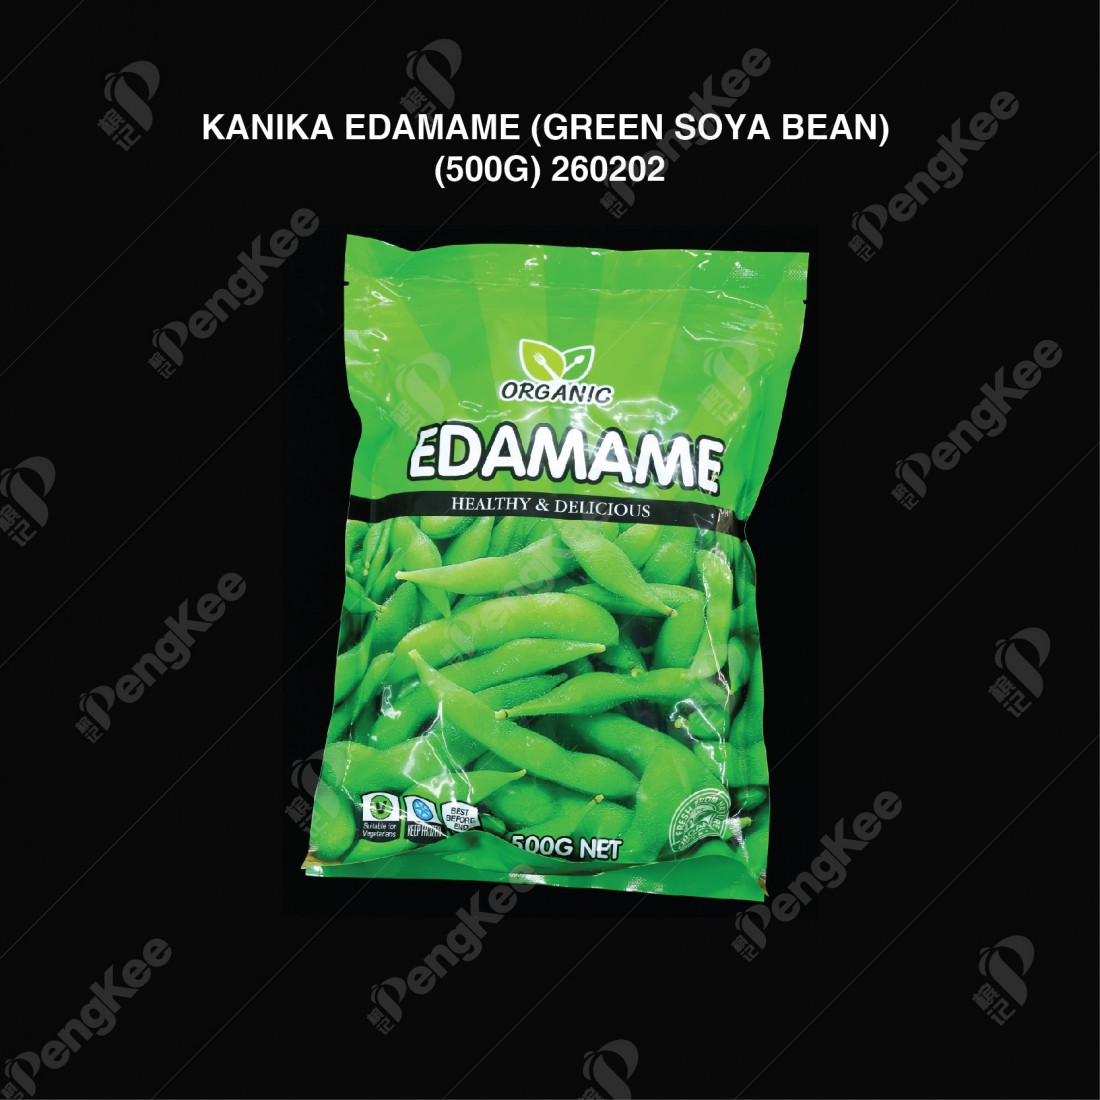 KANIKA EDAMAME (GREEN SOYA BEAN) (500G)